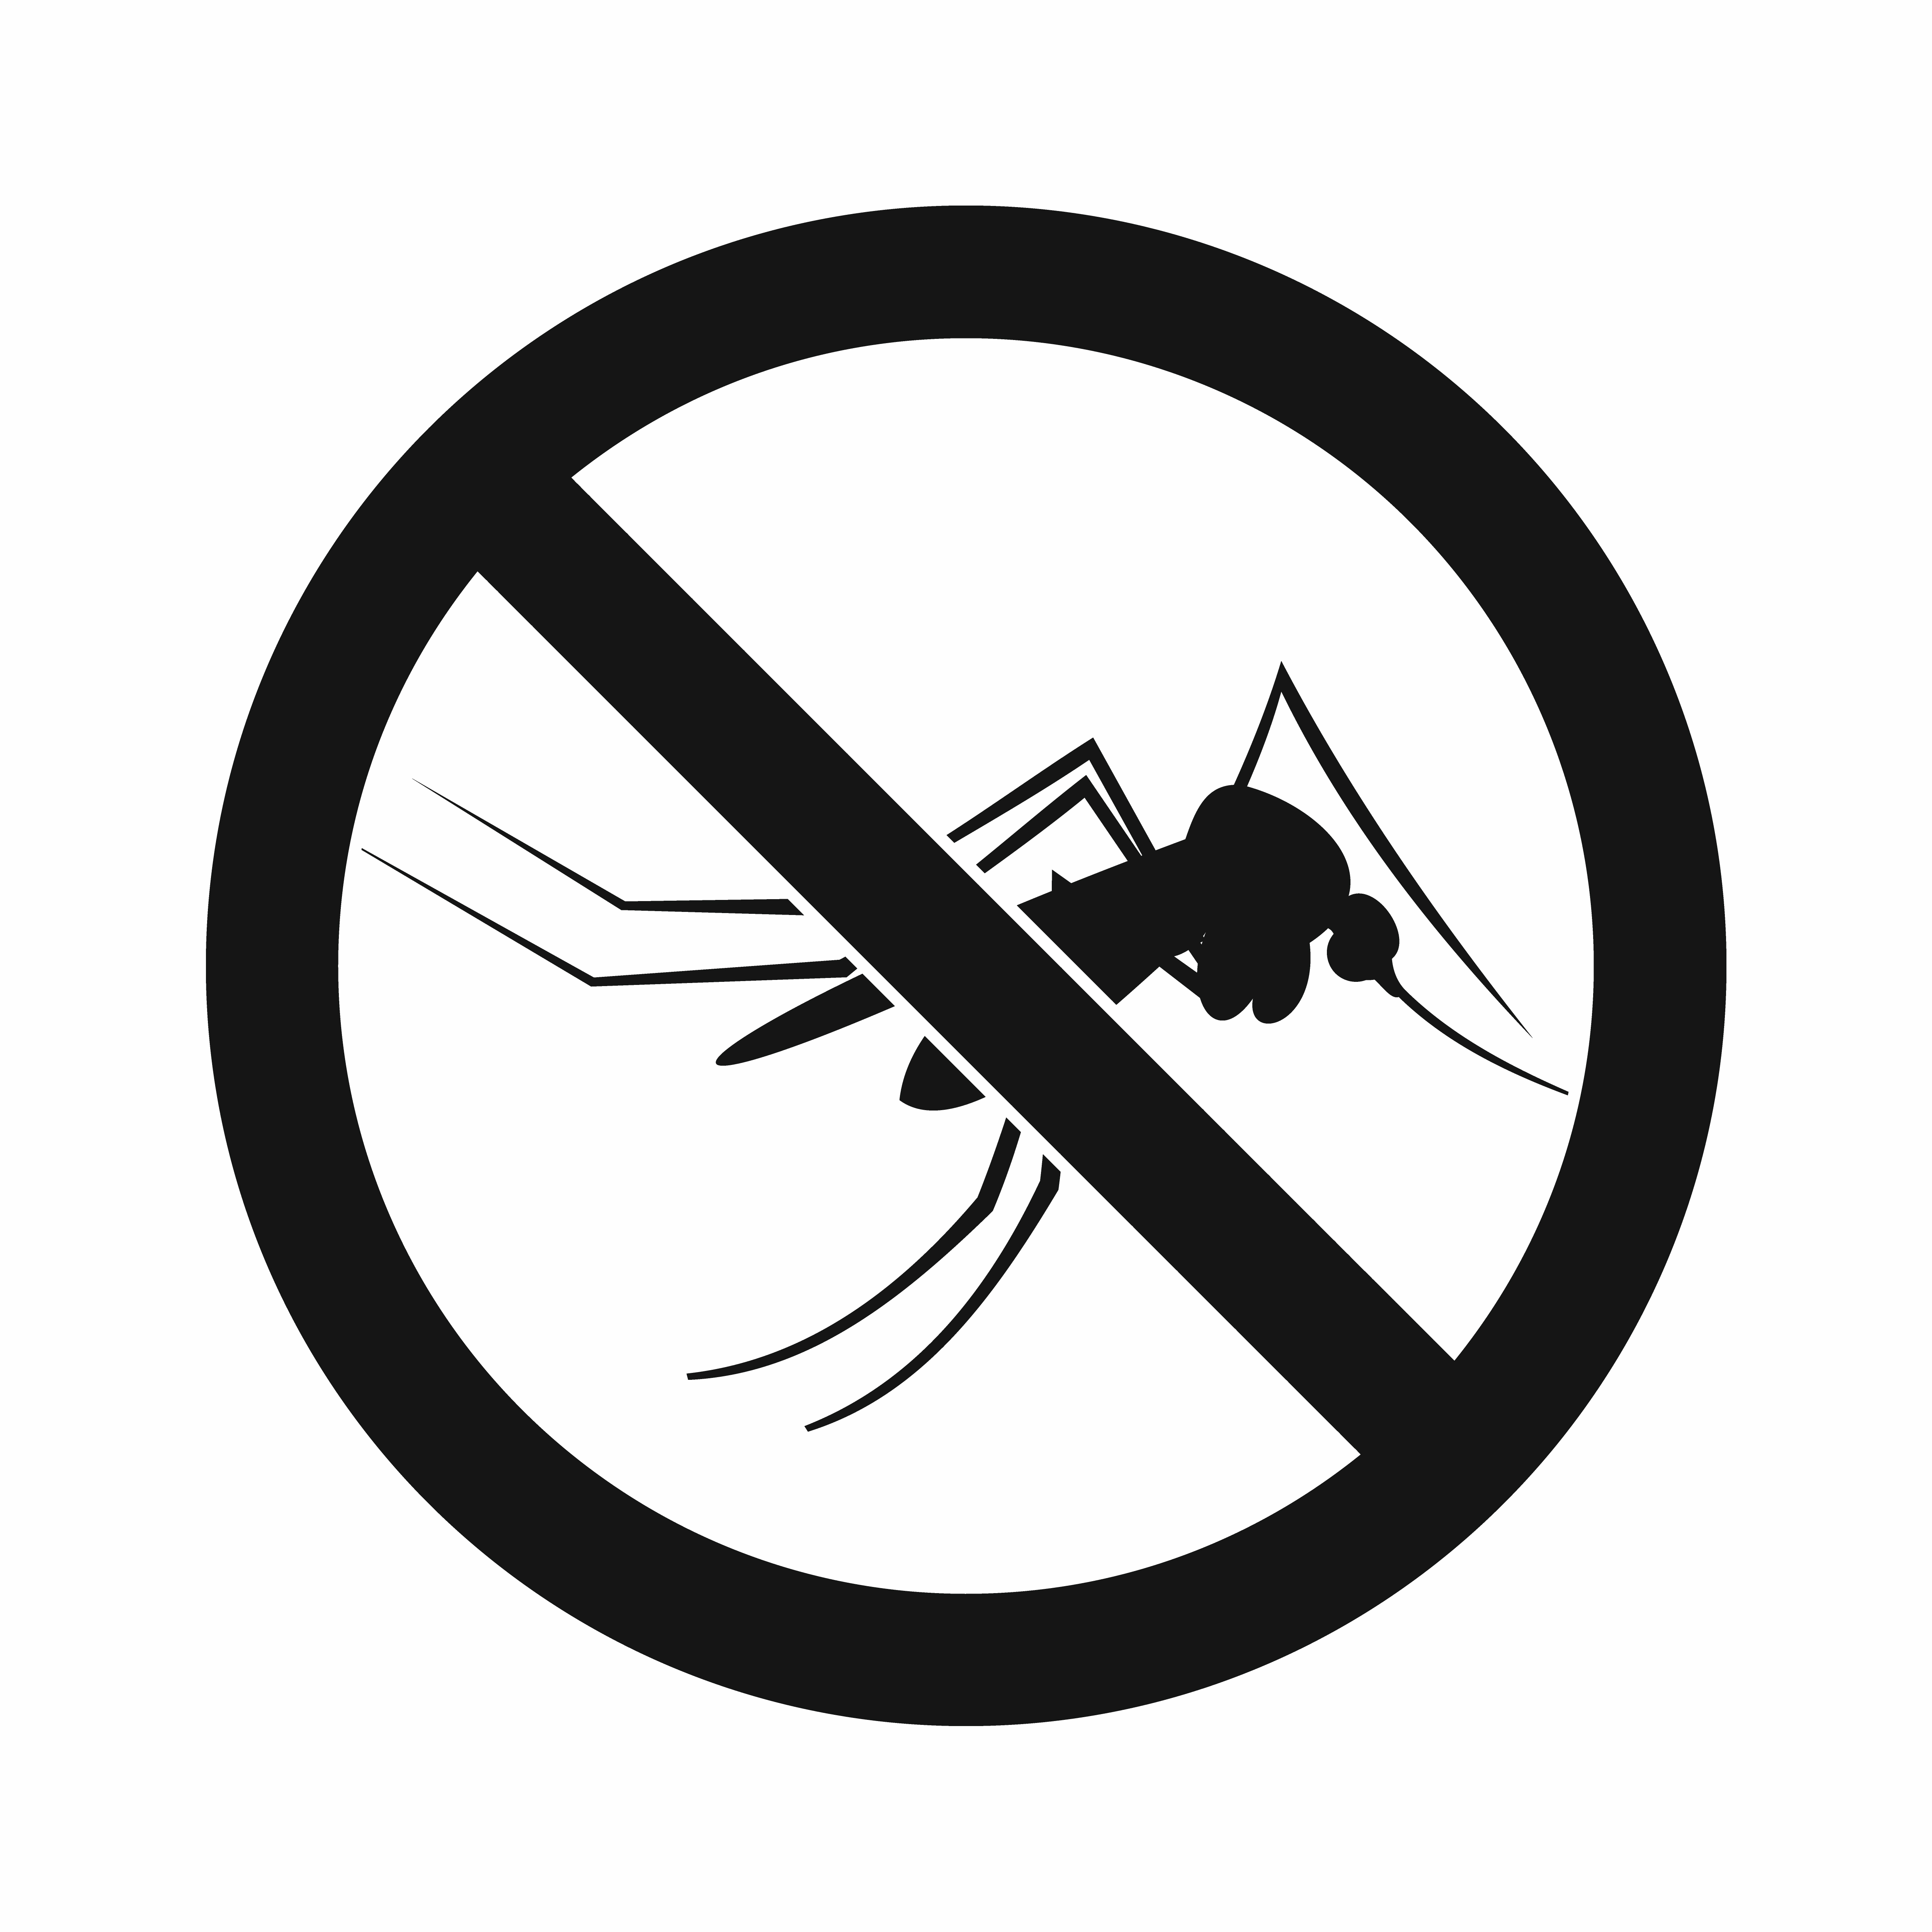 Anti-mosquito equipment